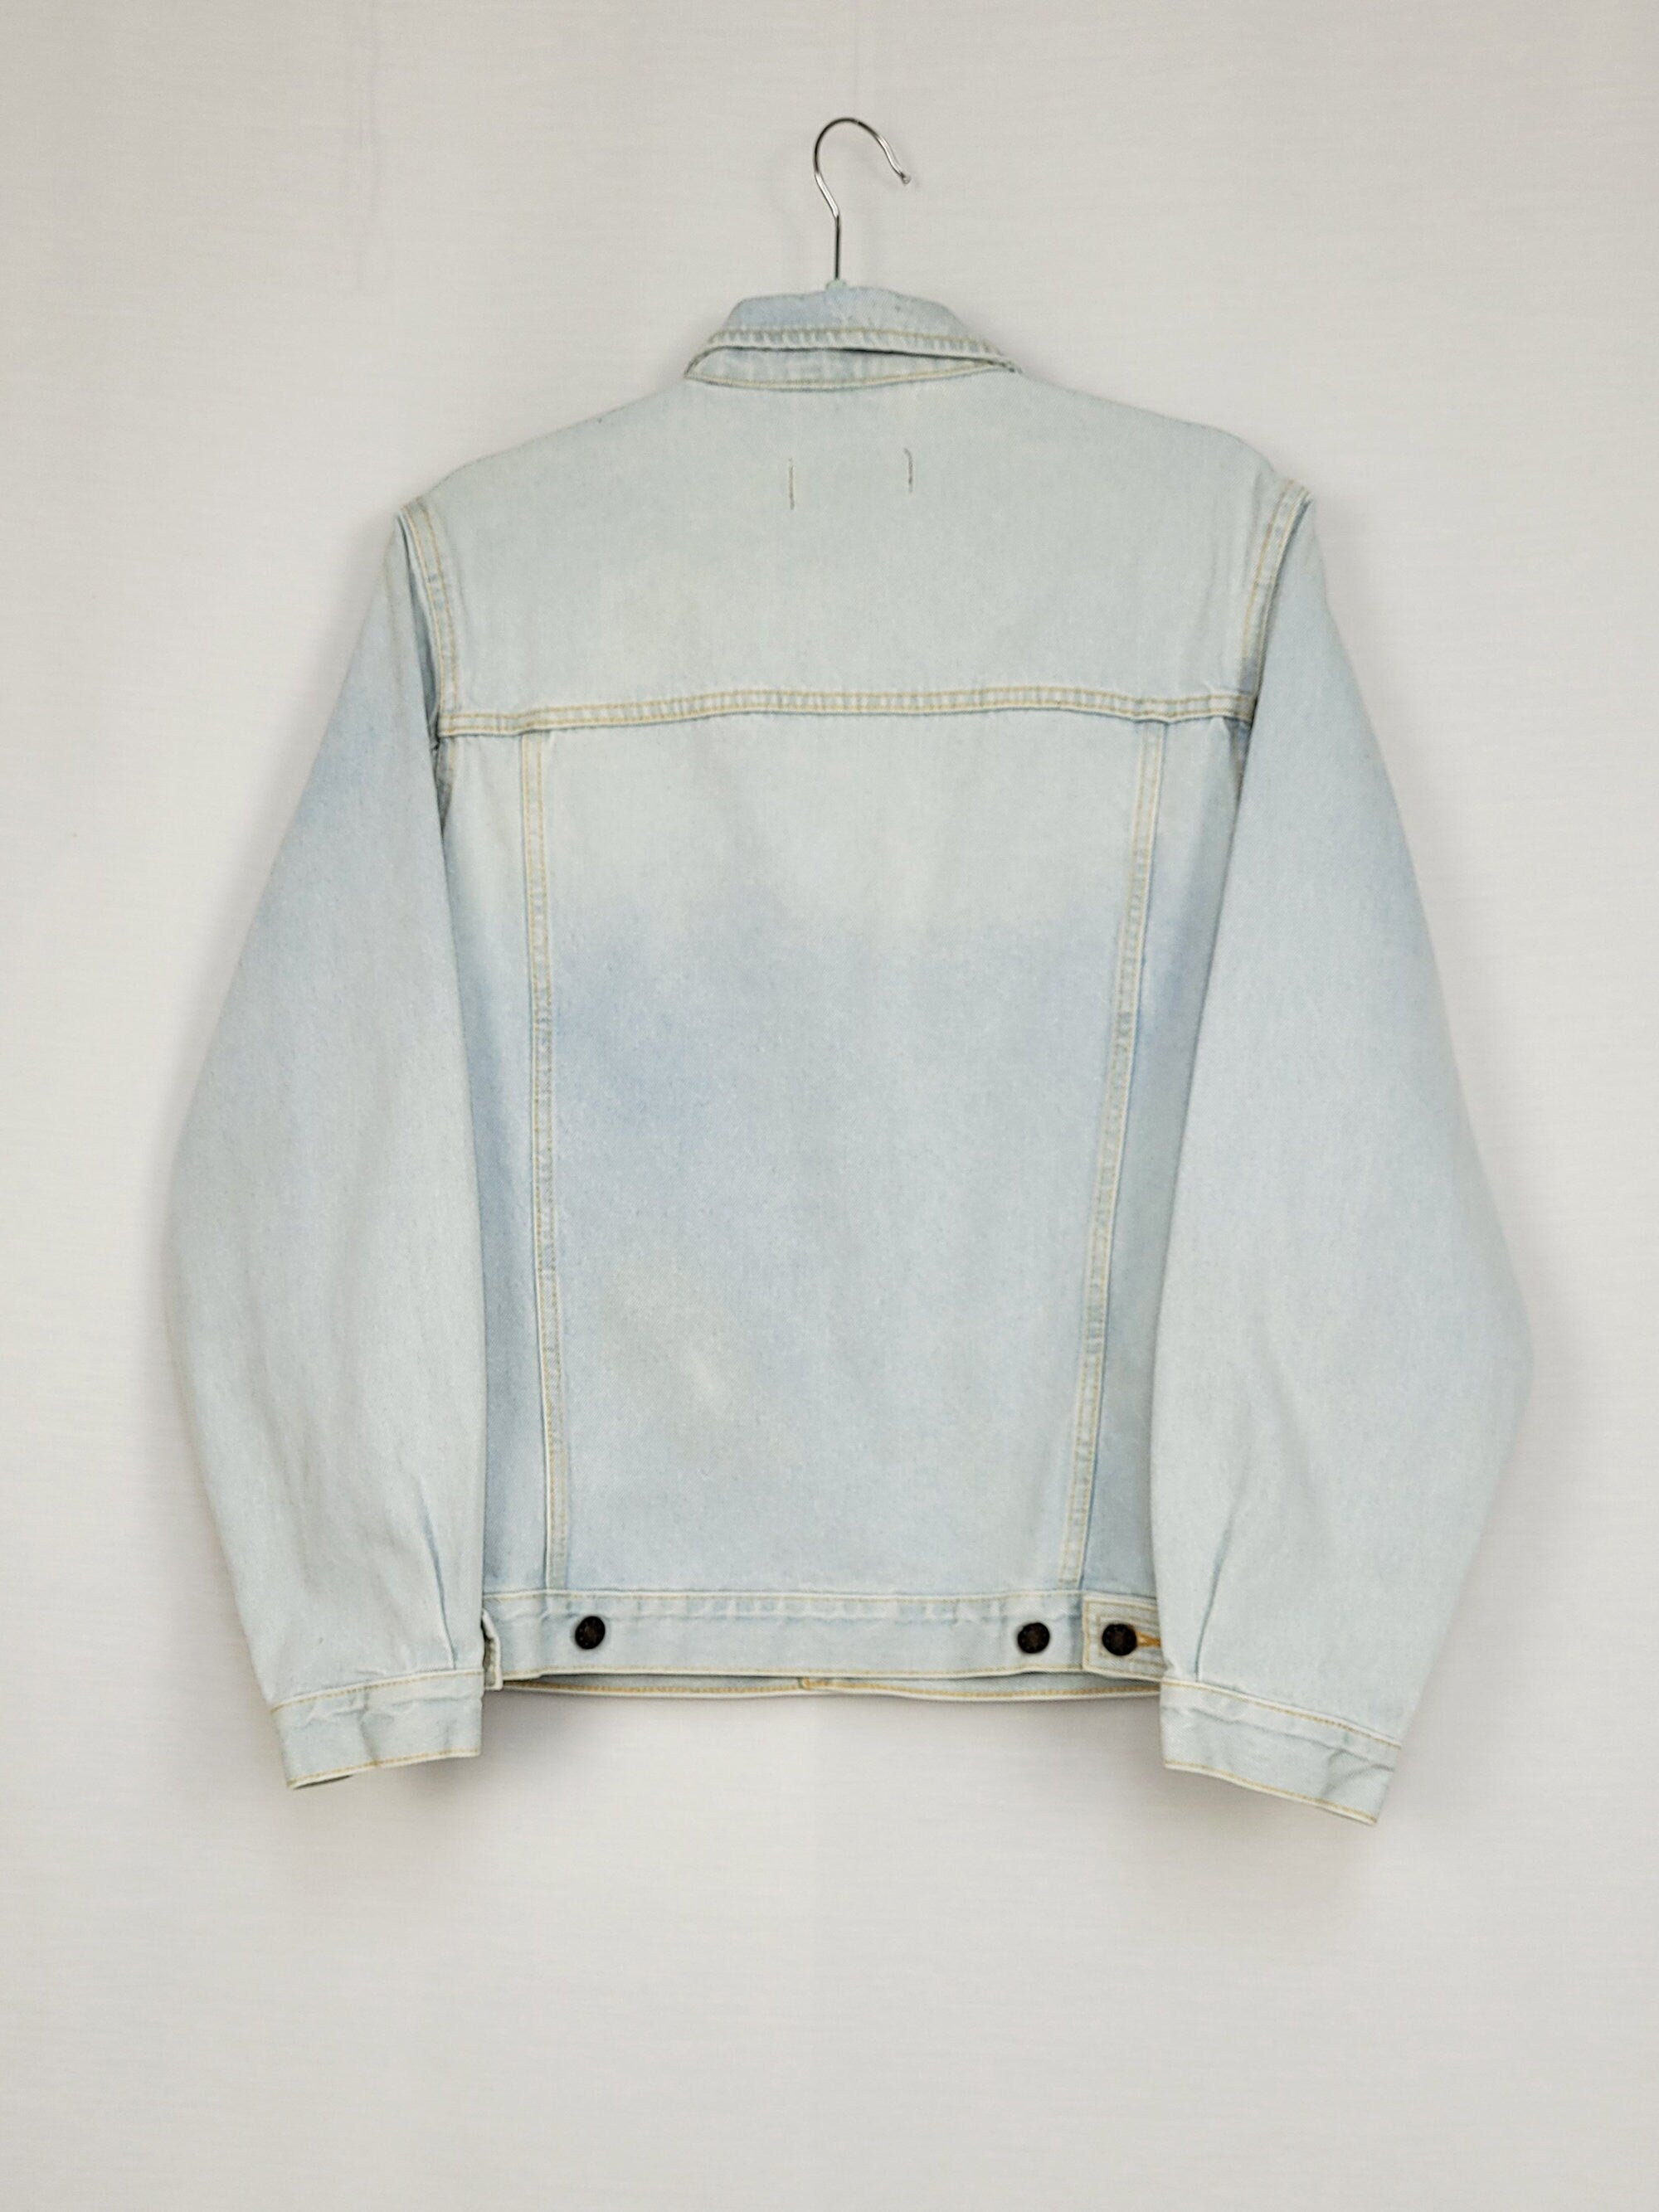 Vintage 90s light blue denim oversized jeans jacket